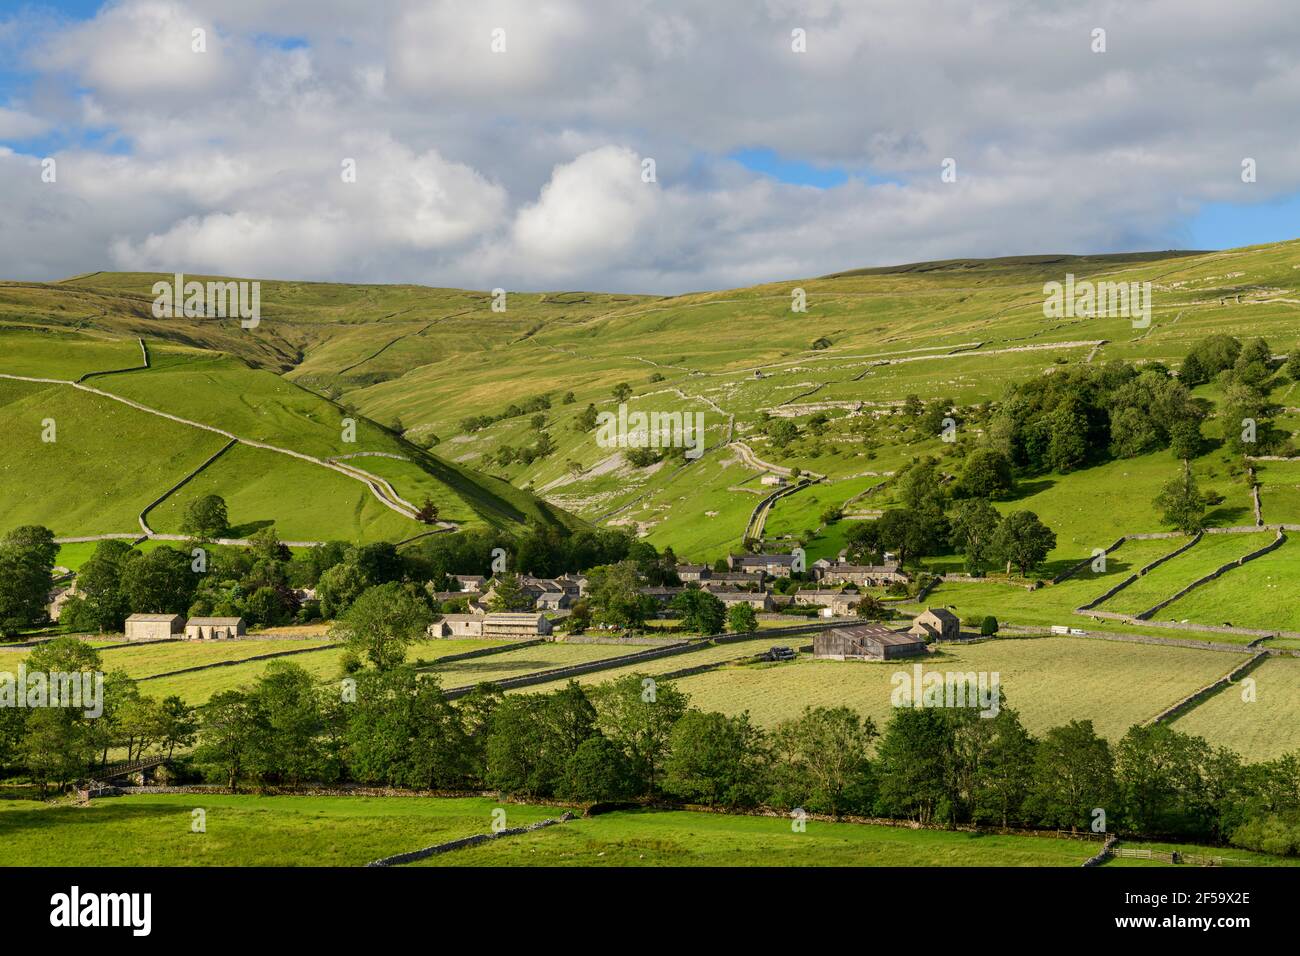 Malerisches Dorf Dales (Steinhäuser) eingebettet in sonnendurchfluteten Tal von Feldern, Hügeln, Hängen und steilen Schlucht - Starbotton, Yorkshire England Großbritannien. Stockfoto